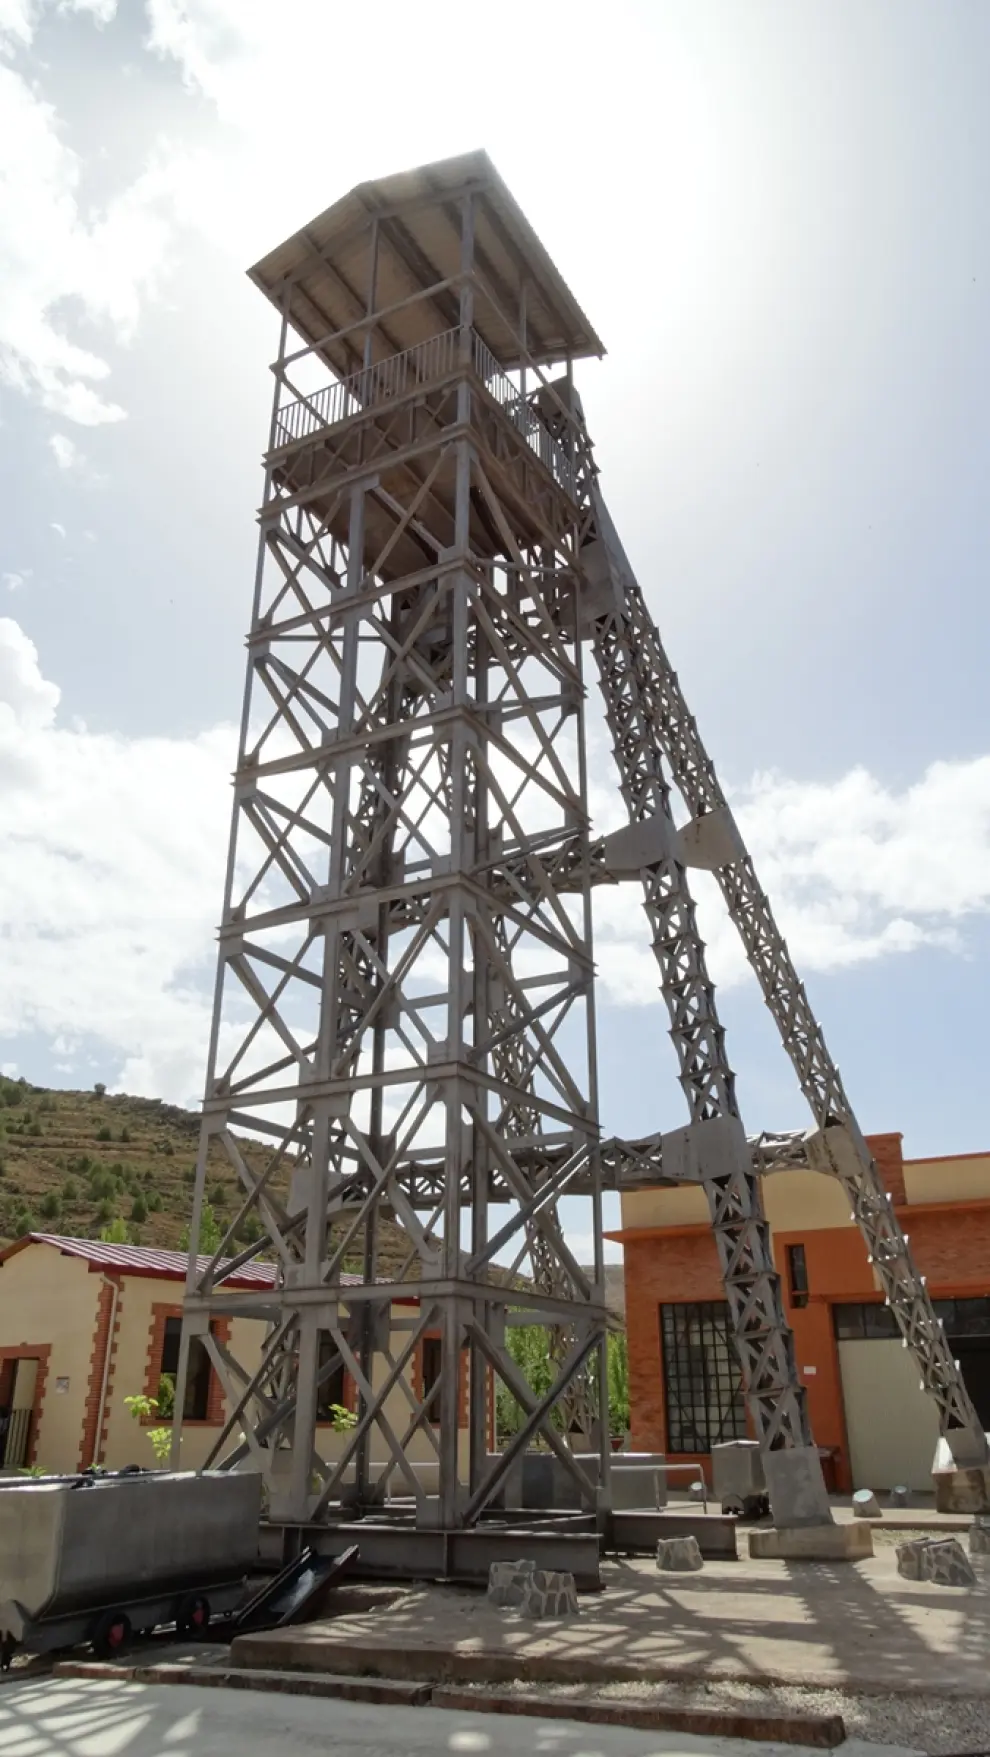 Parque Temático de la Minería de Utrillas